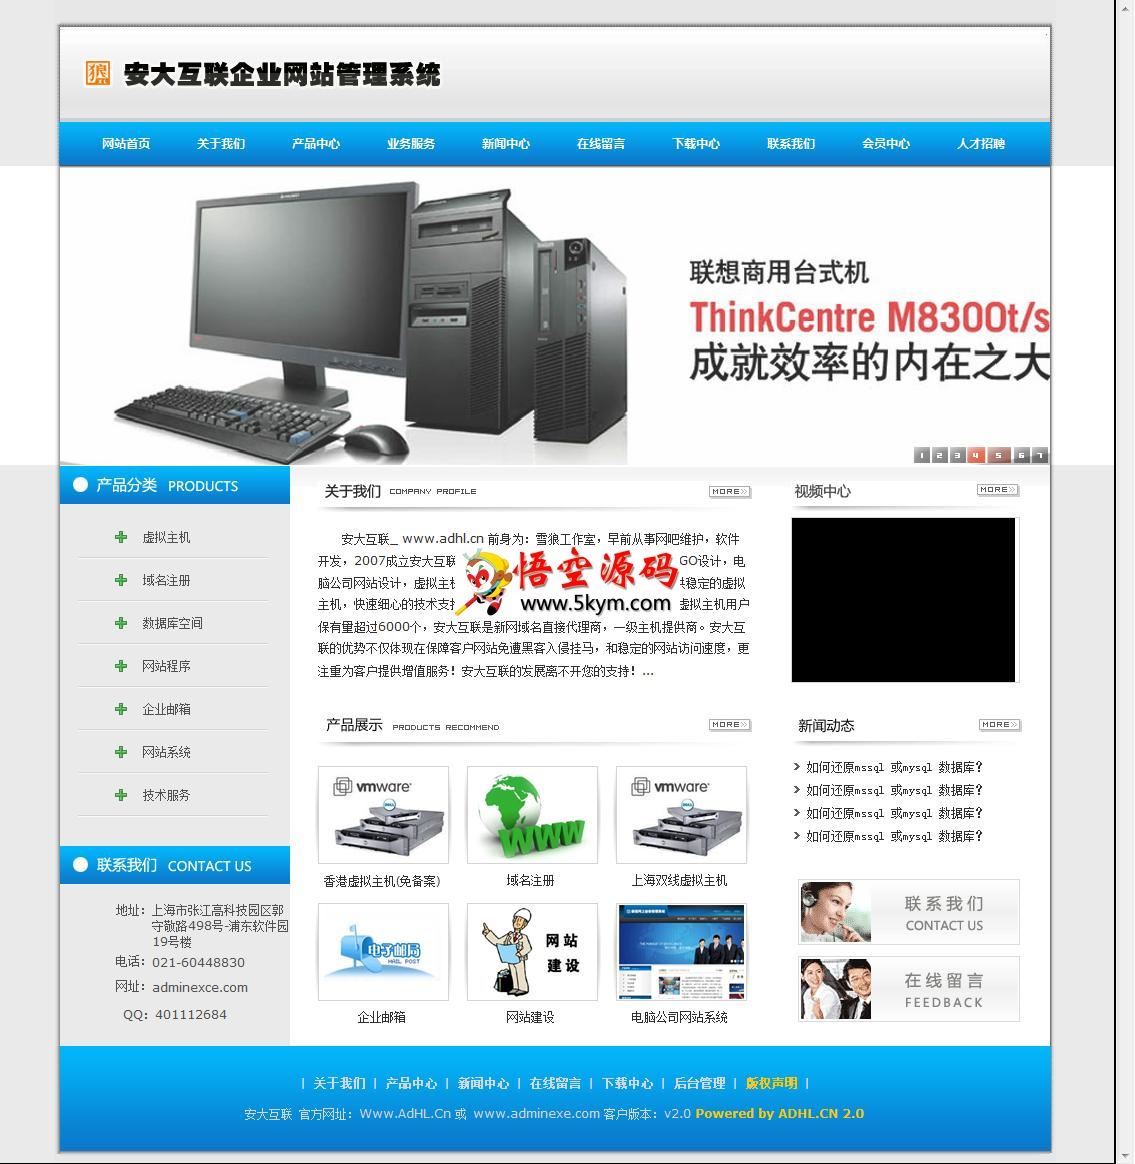 安大互联企业网站管理系统